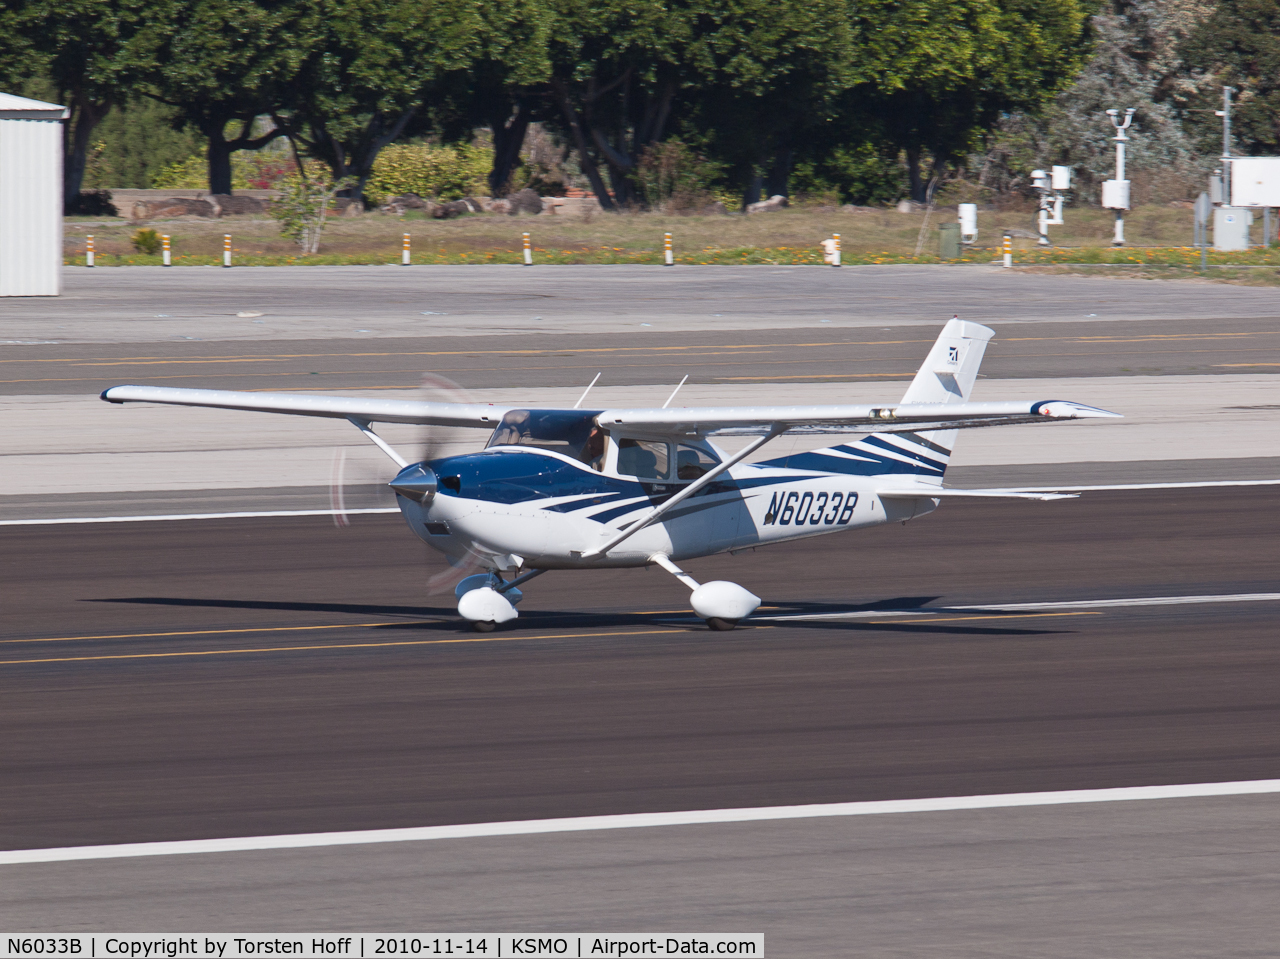 N6033B, 2006 Cessna T182T Turbo Skylane C/N T18208559, N6033B departing from RWY 21